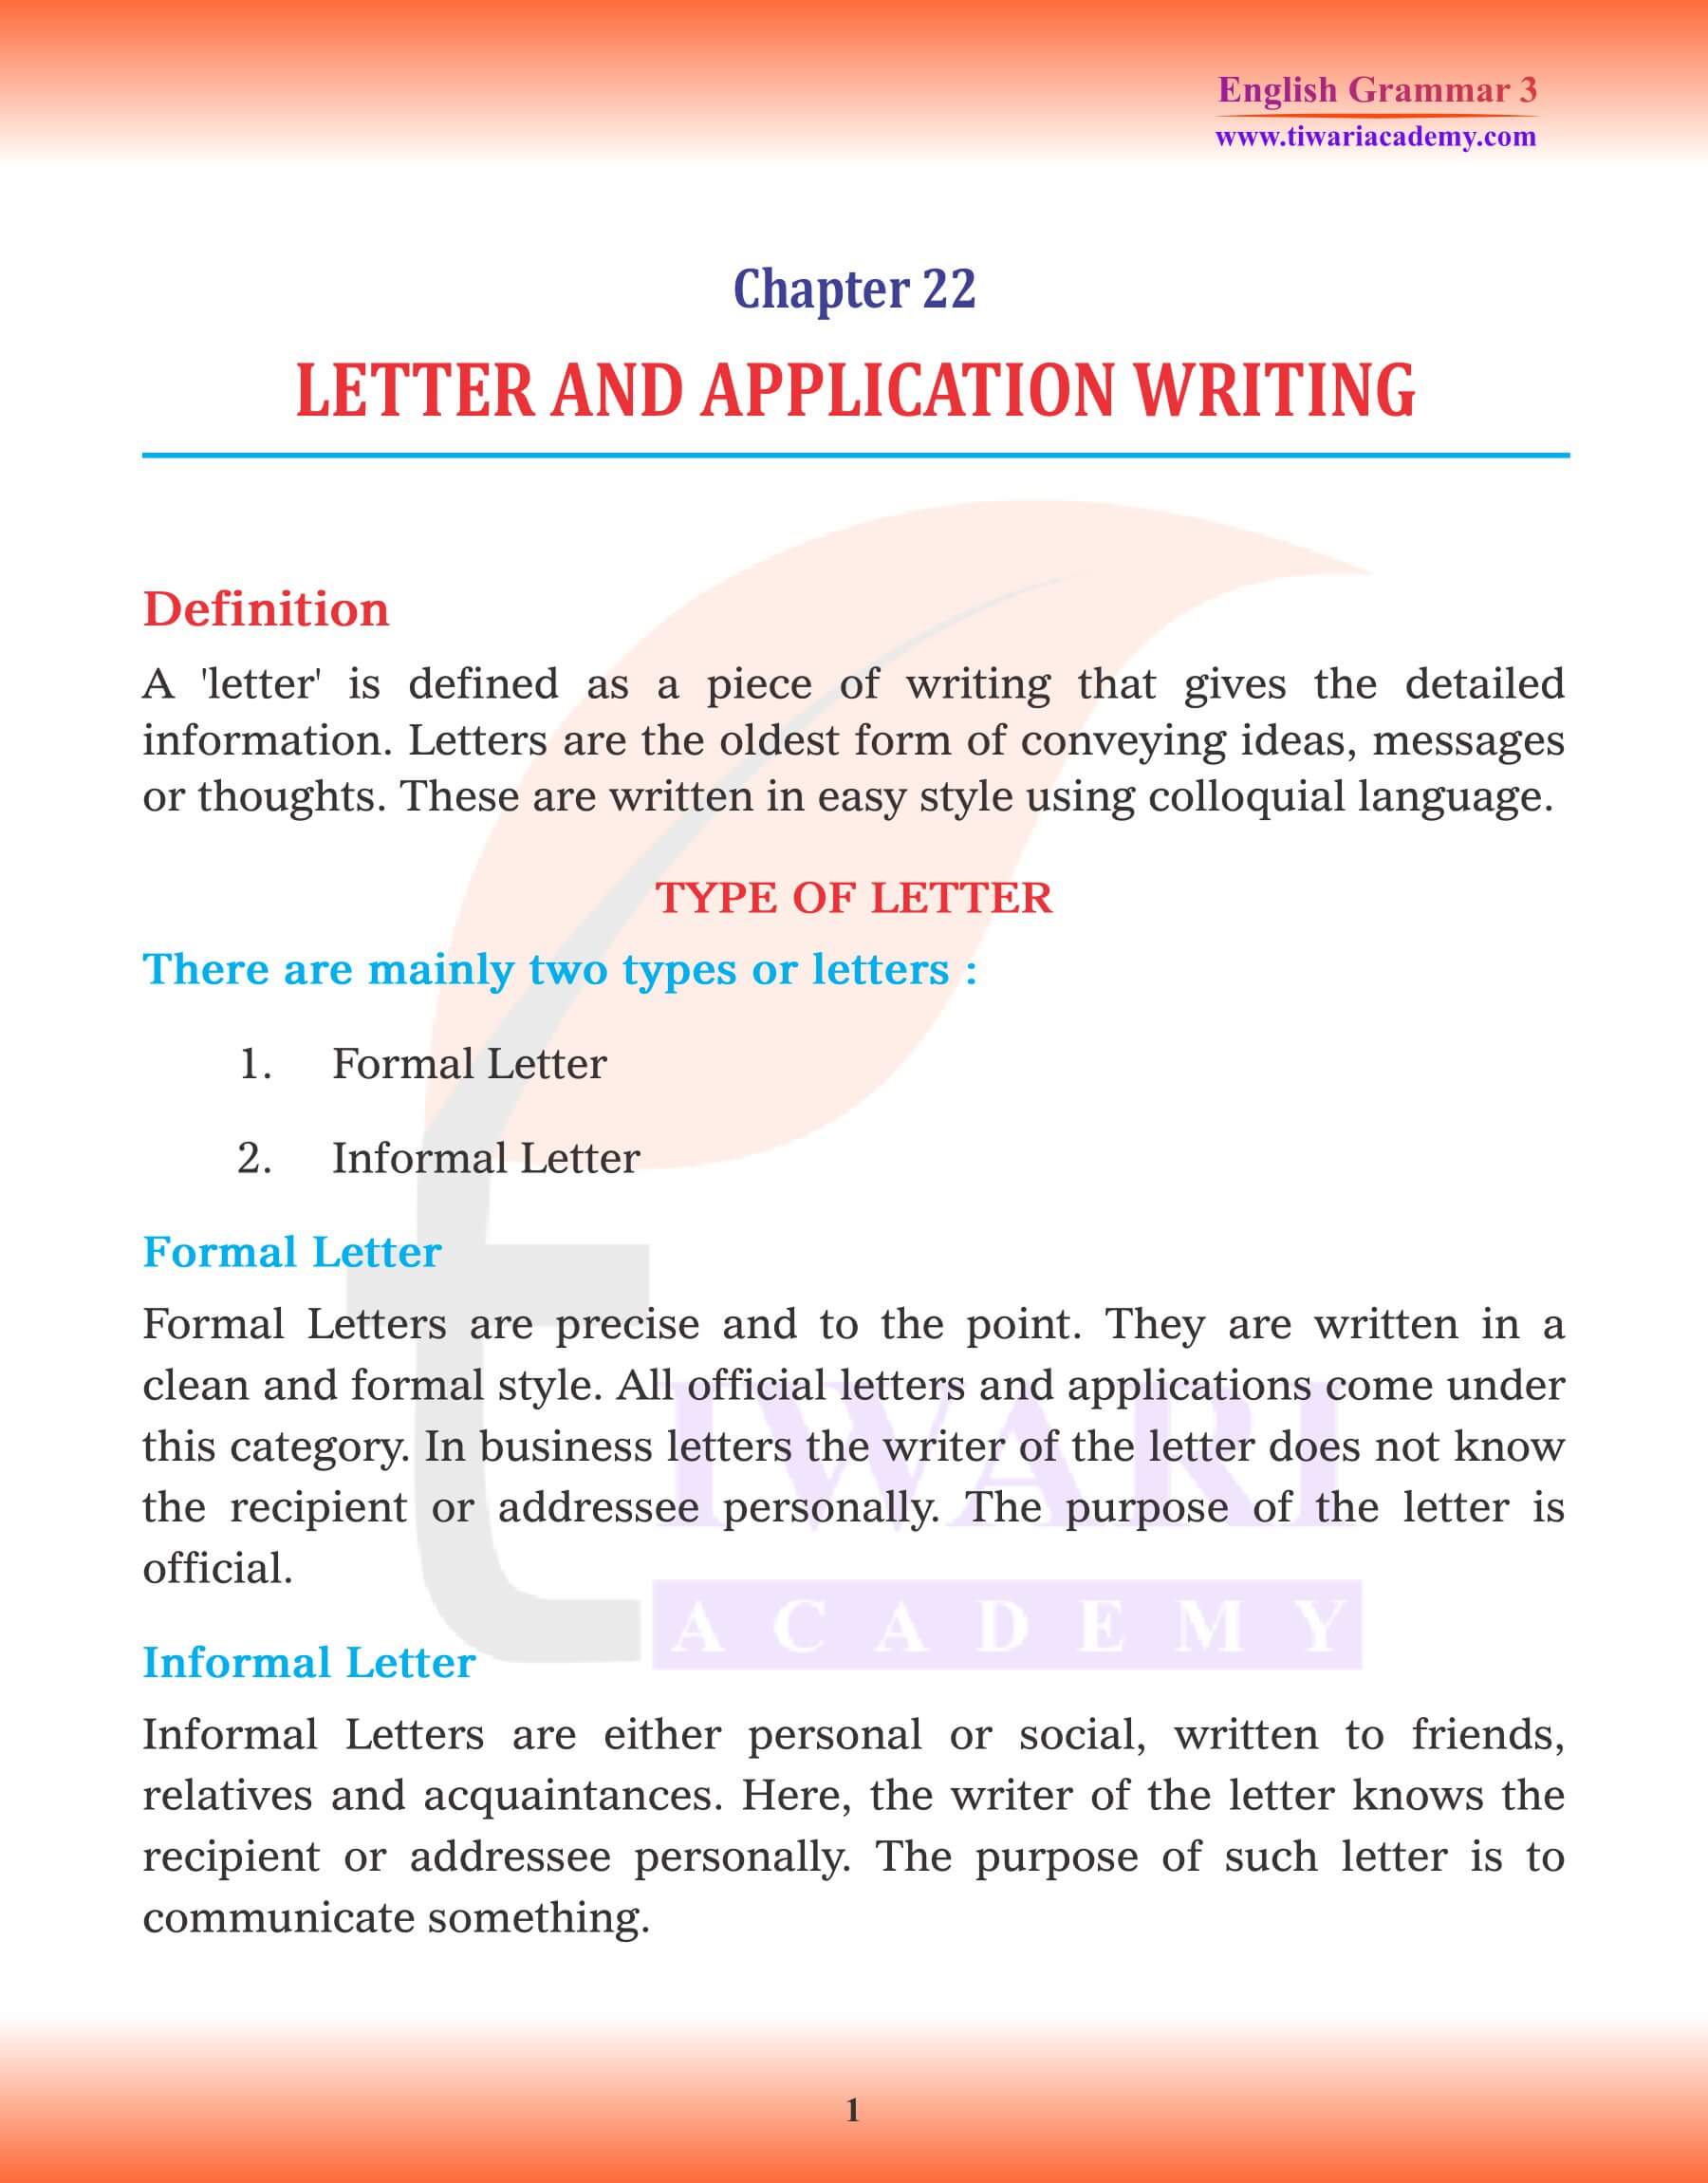 Class 3 English Grammar Chapter 22 Letter